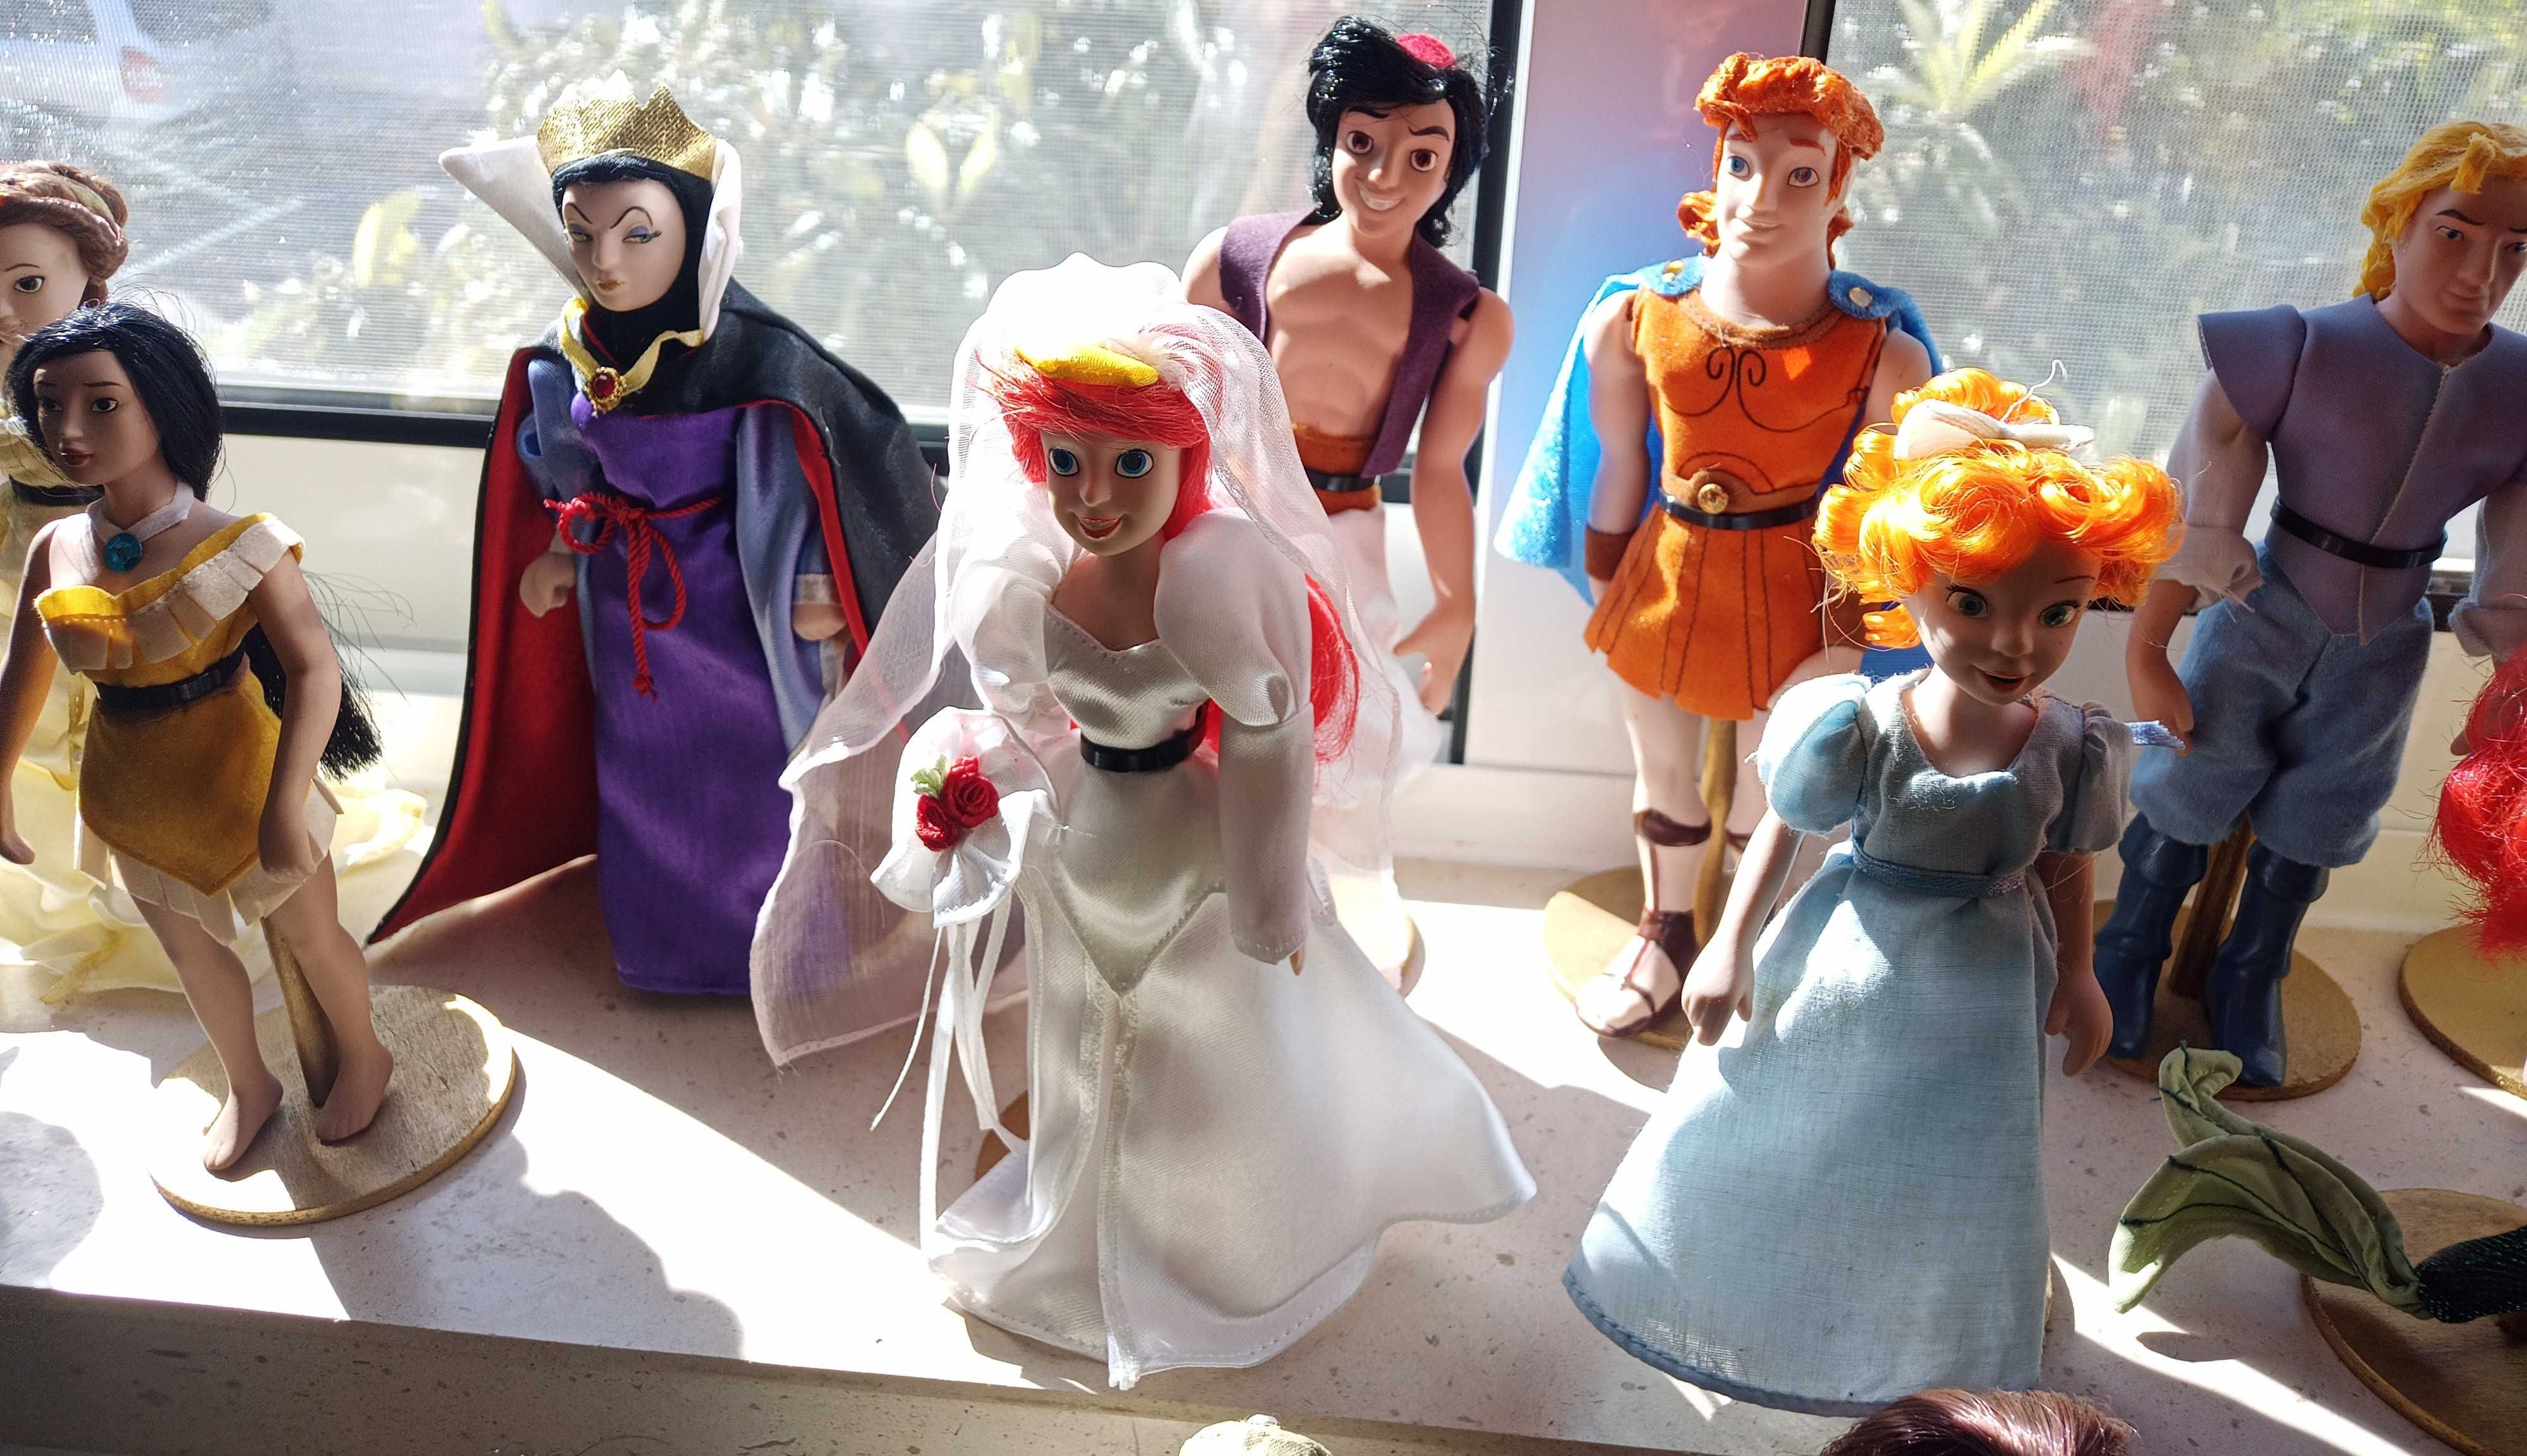 Coleção bonecas porcelana Disney